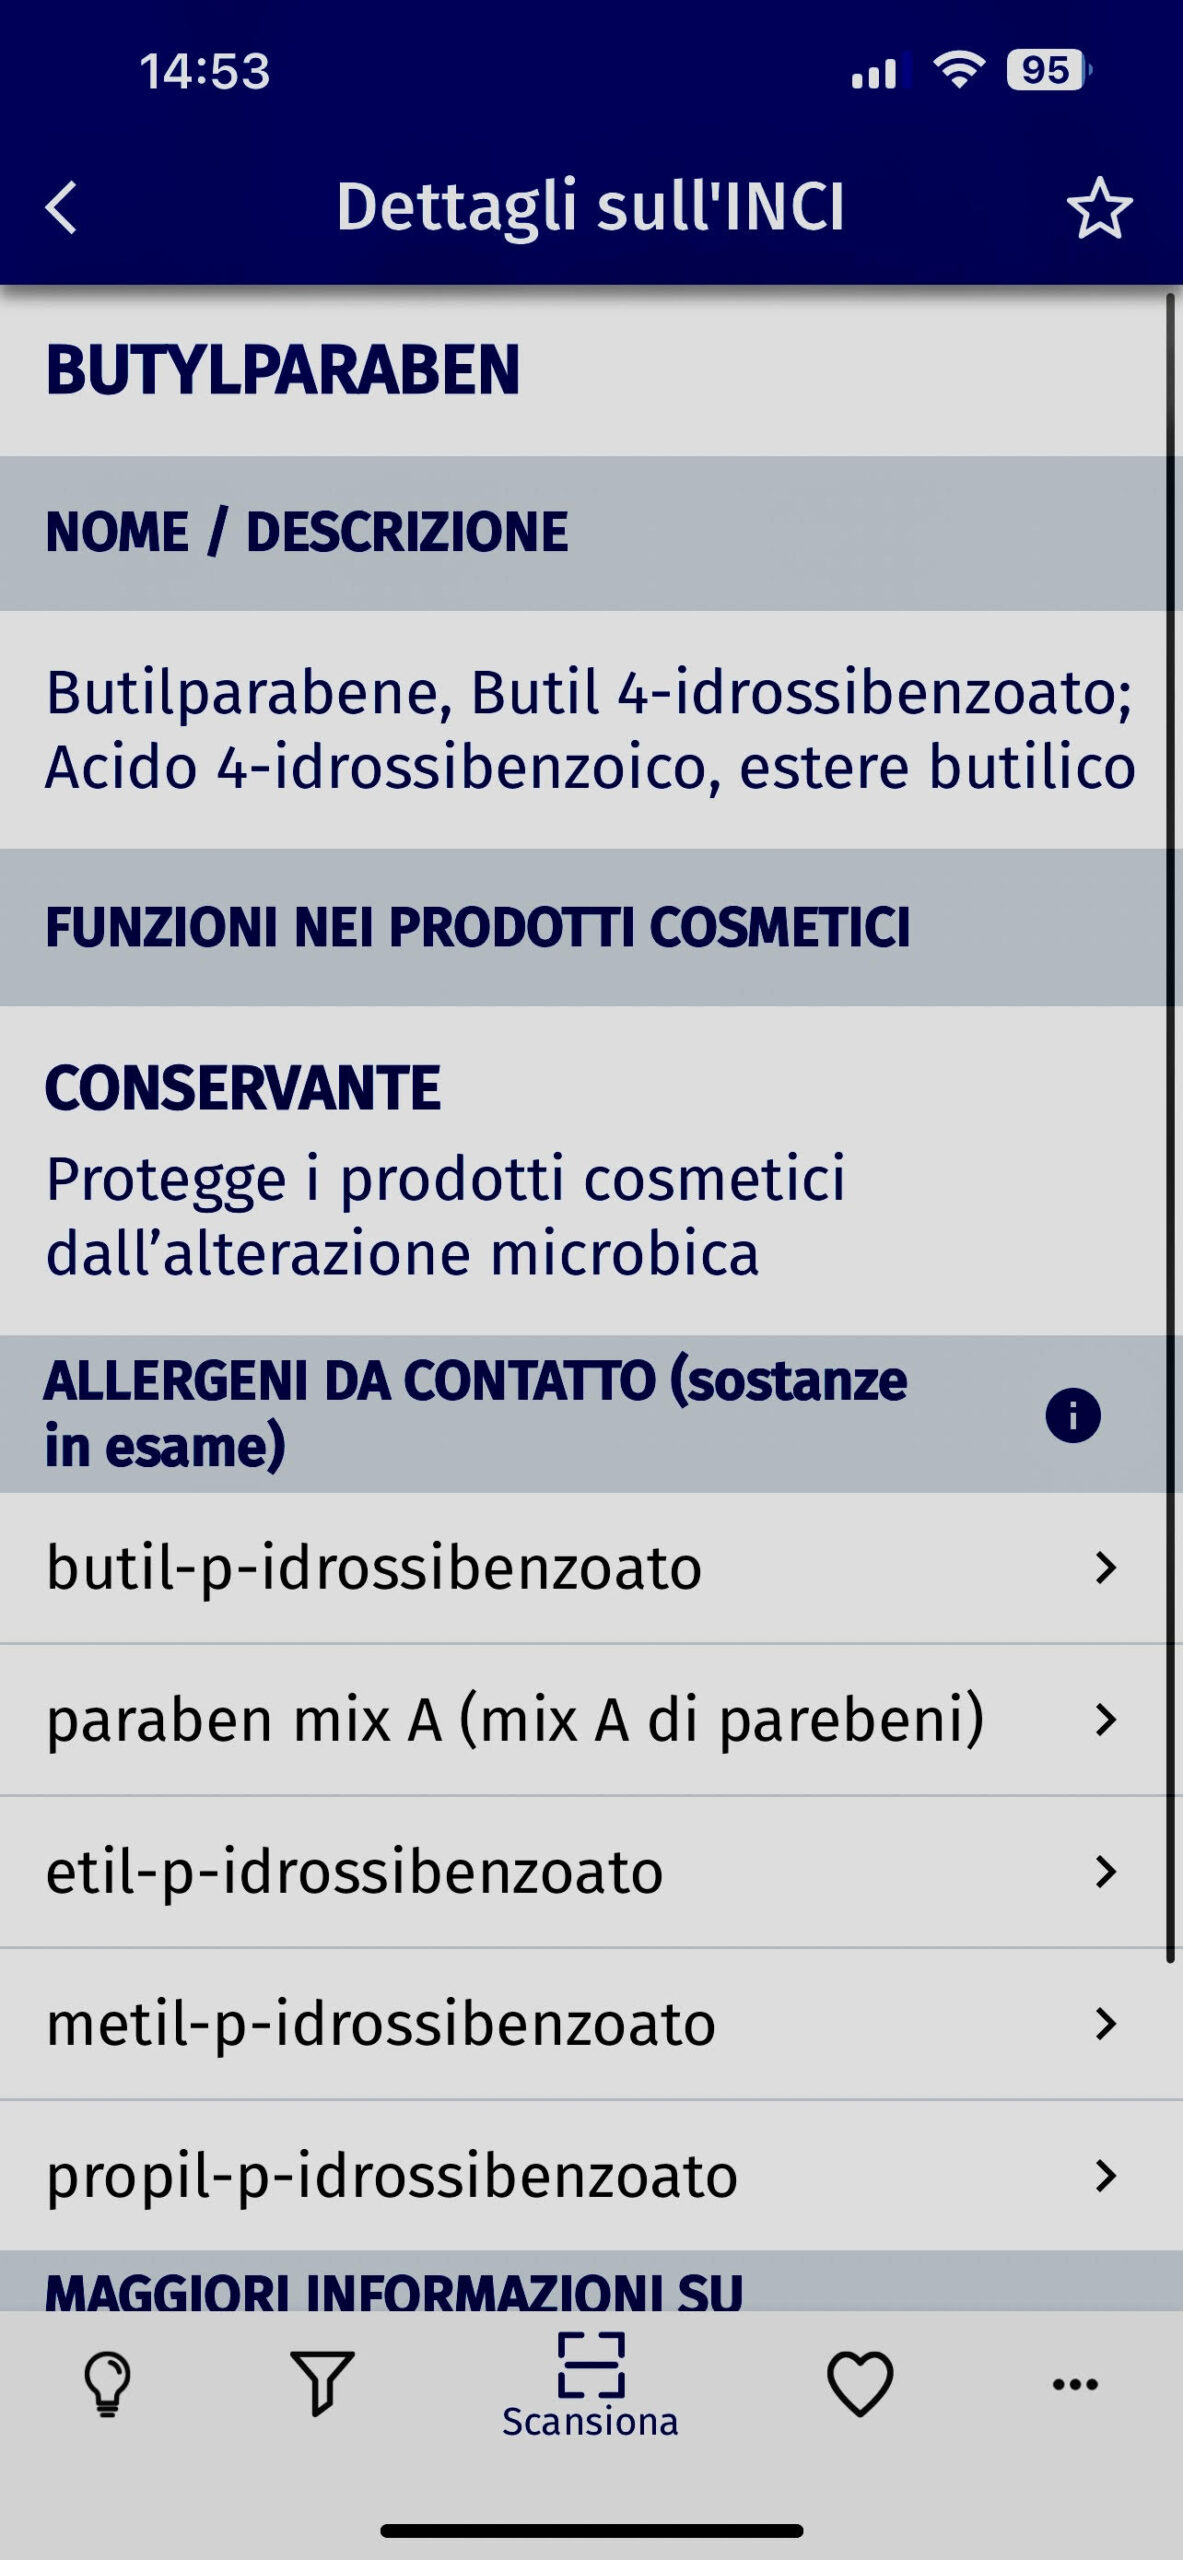 COSMILE App jetzt auch auf Italienisch